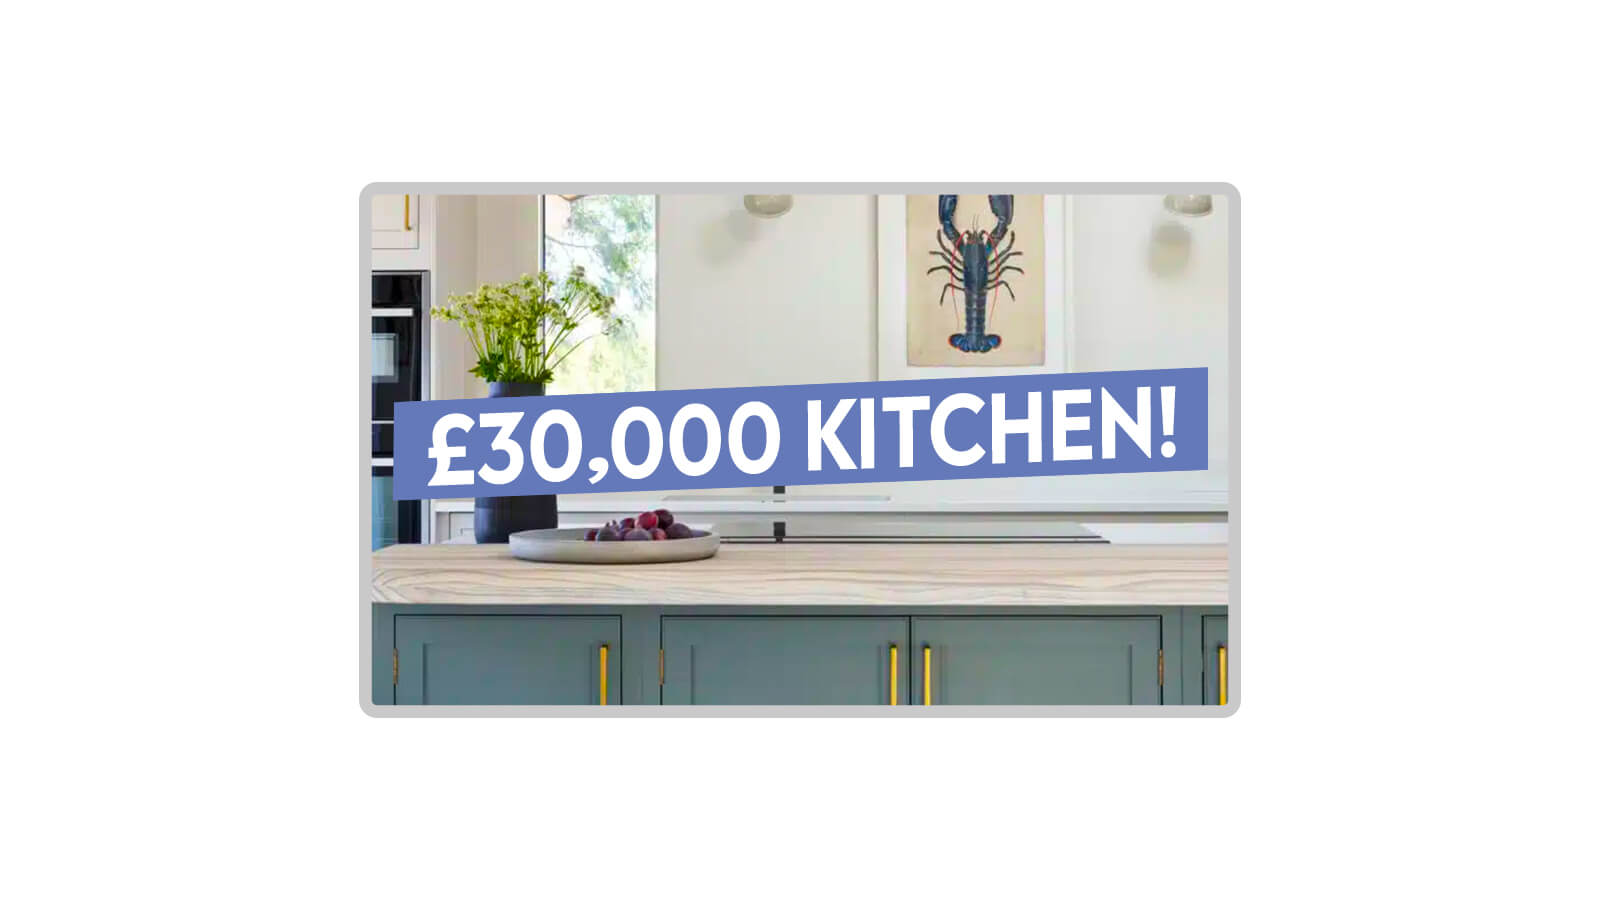   Kitchen Makeover: Worth £30,000 